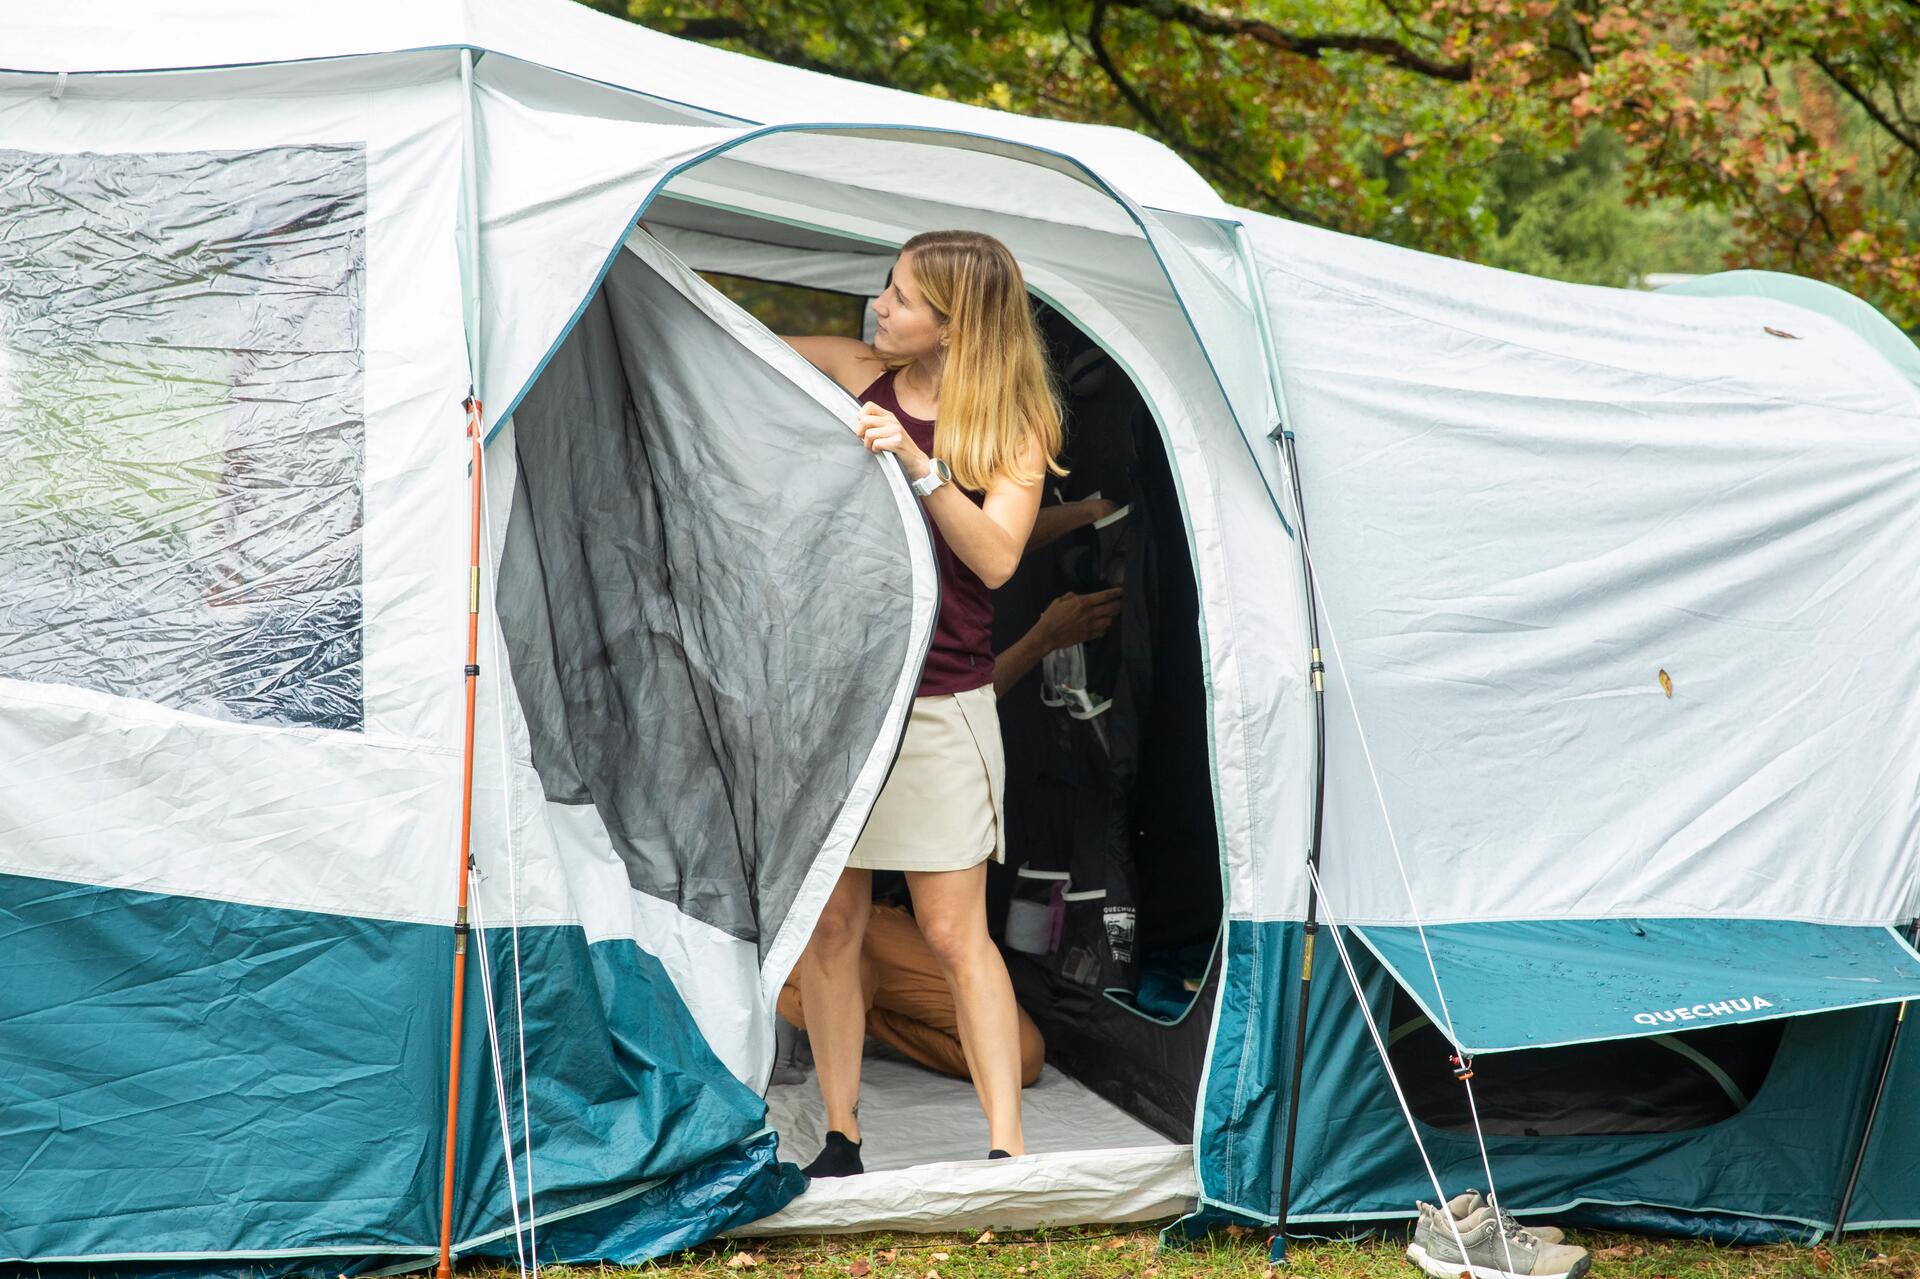 Kobieta otwierająca drzwi wejściowe do namiotu zapobiegając kondensacji pary wodnej